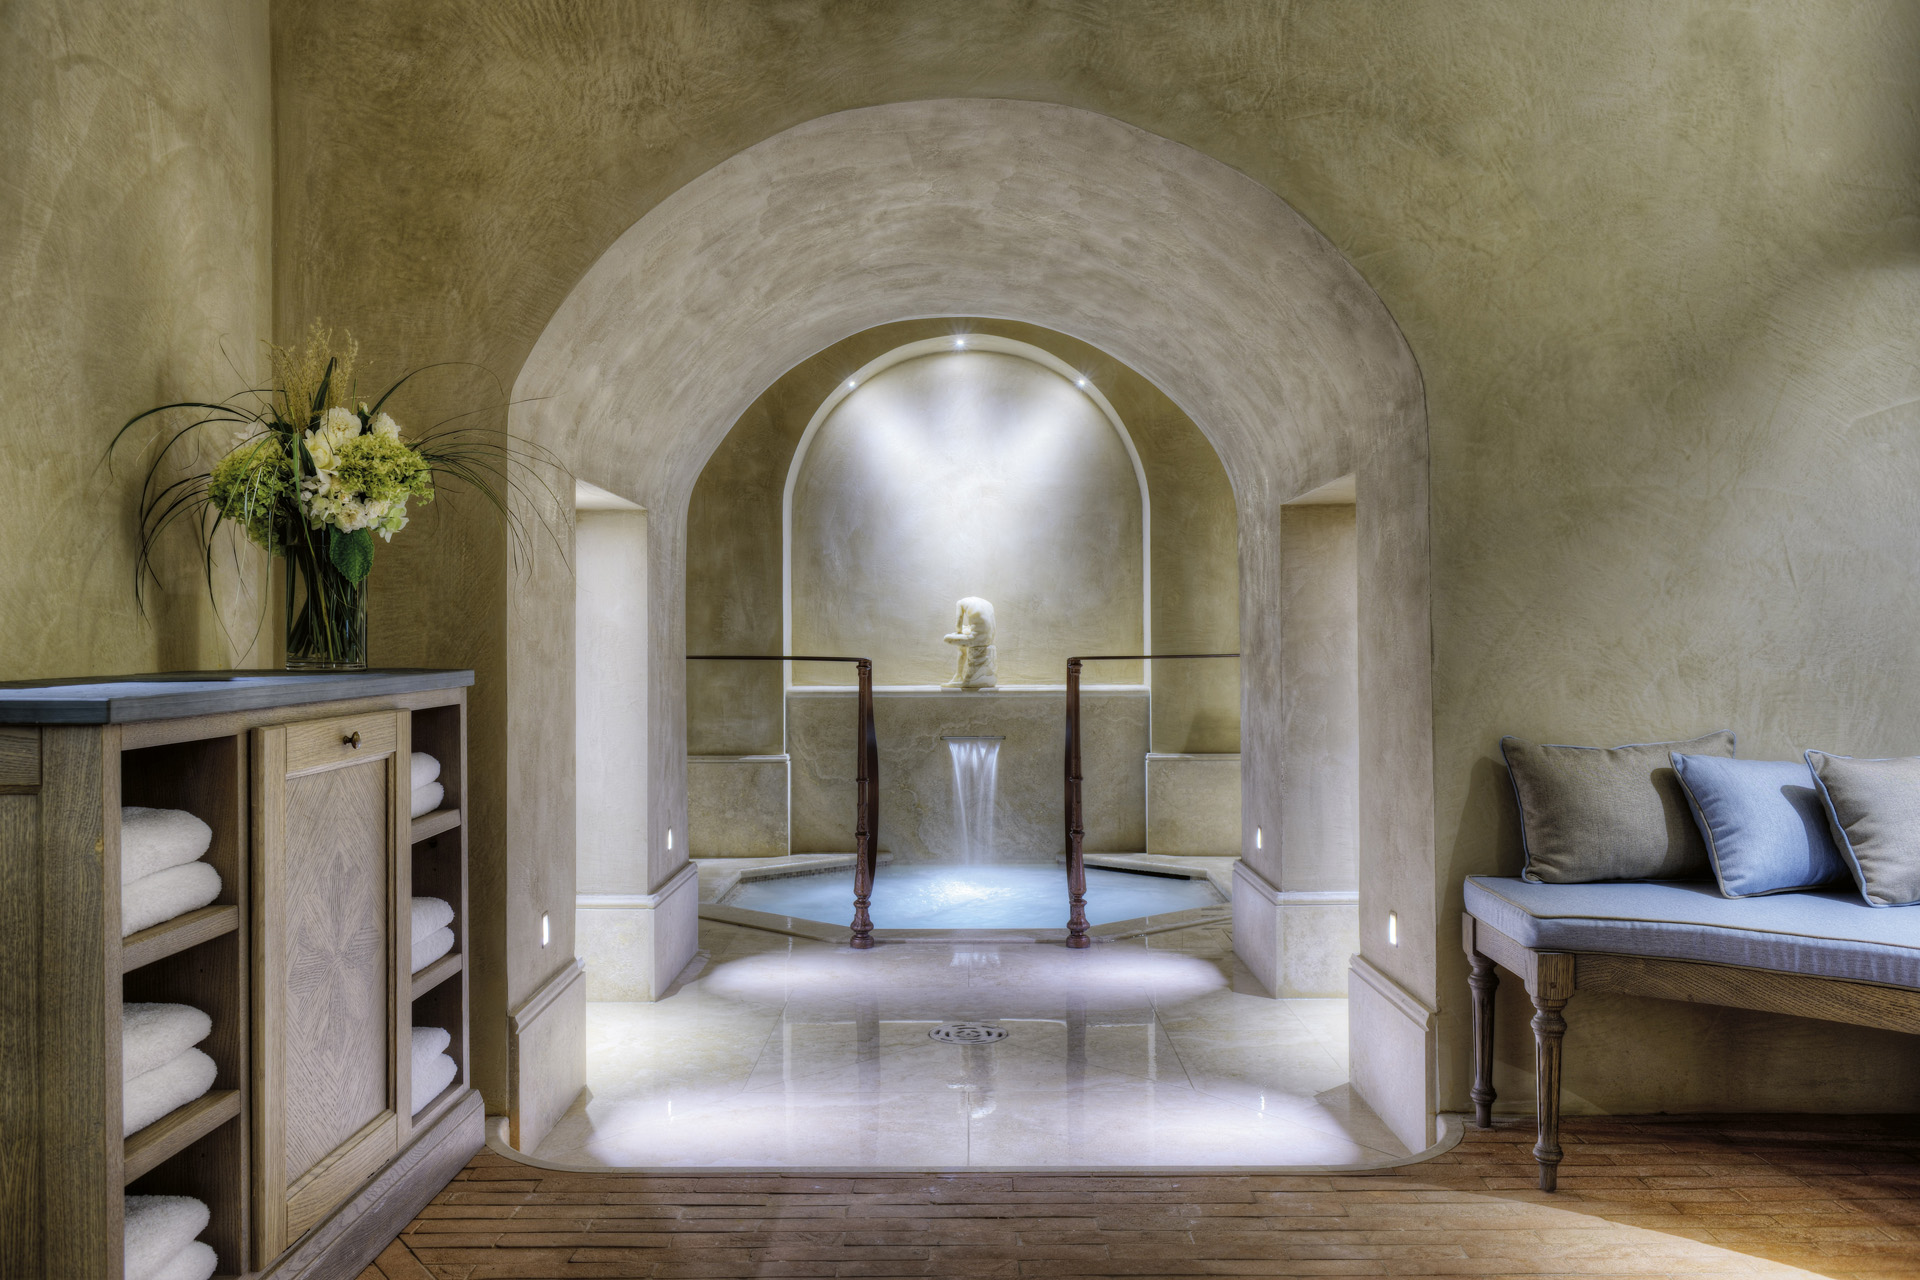 Roman bath in the spa